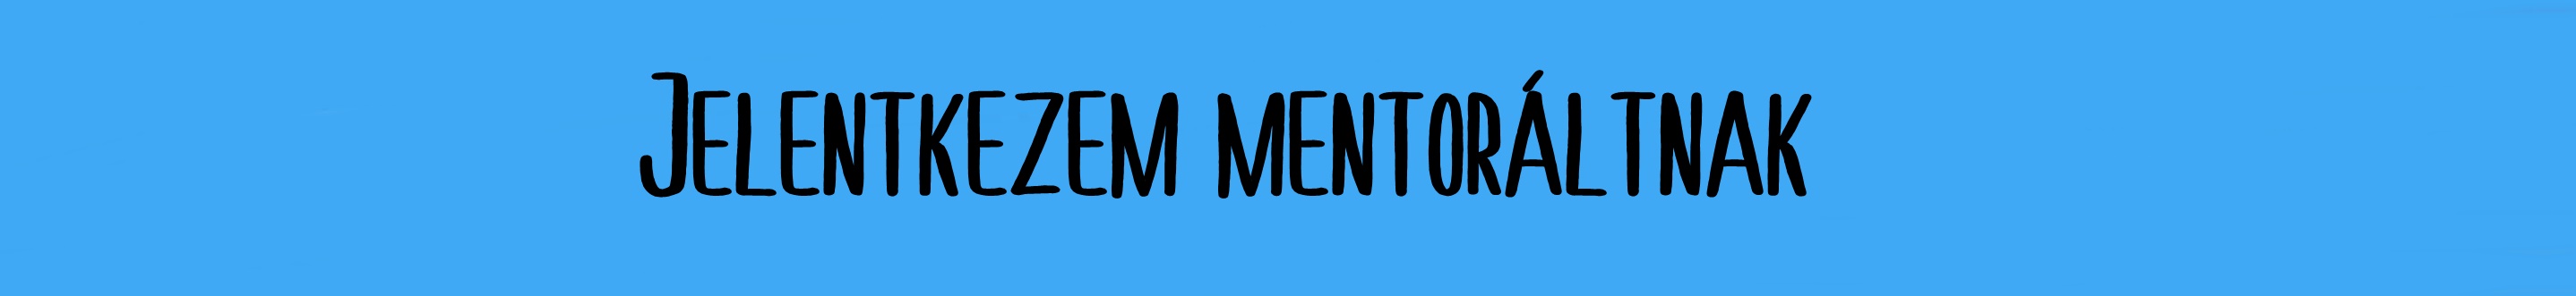 mentorált jel